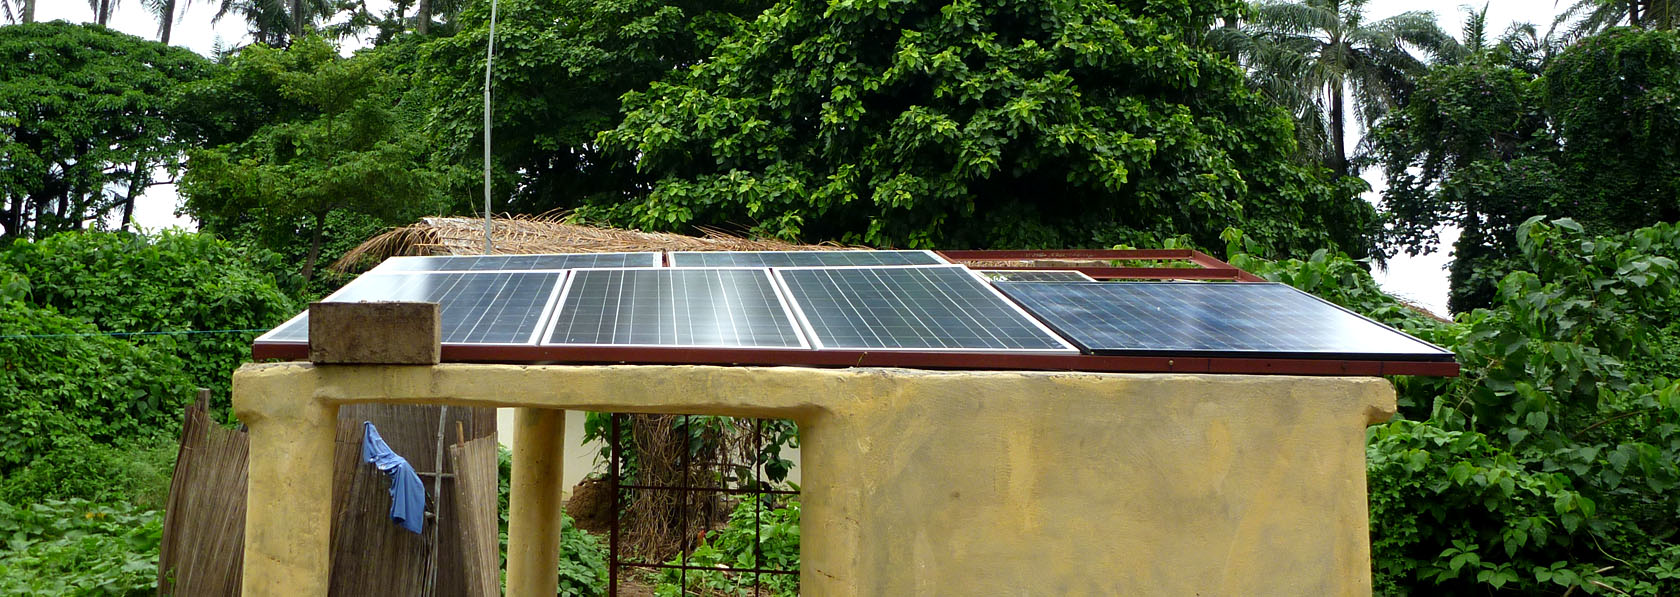 panneau solaire de kere pour une energie plus propre et moins polluante